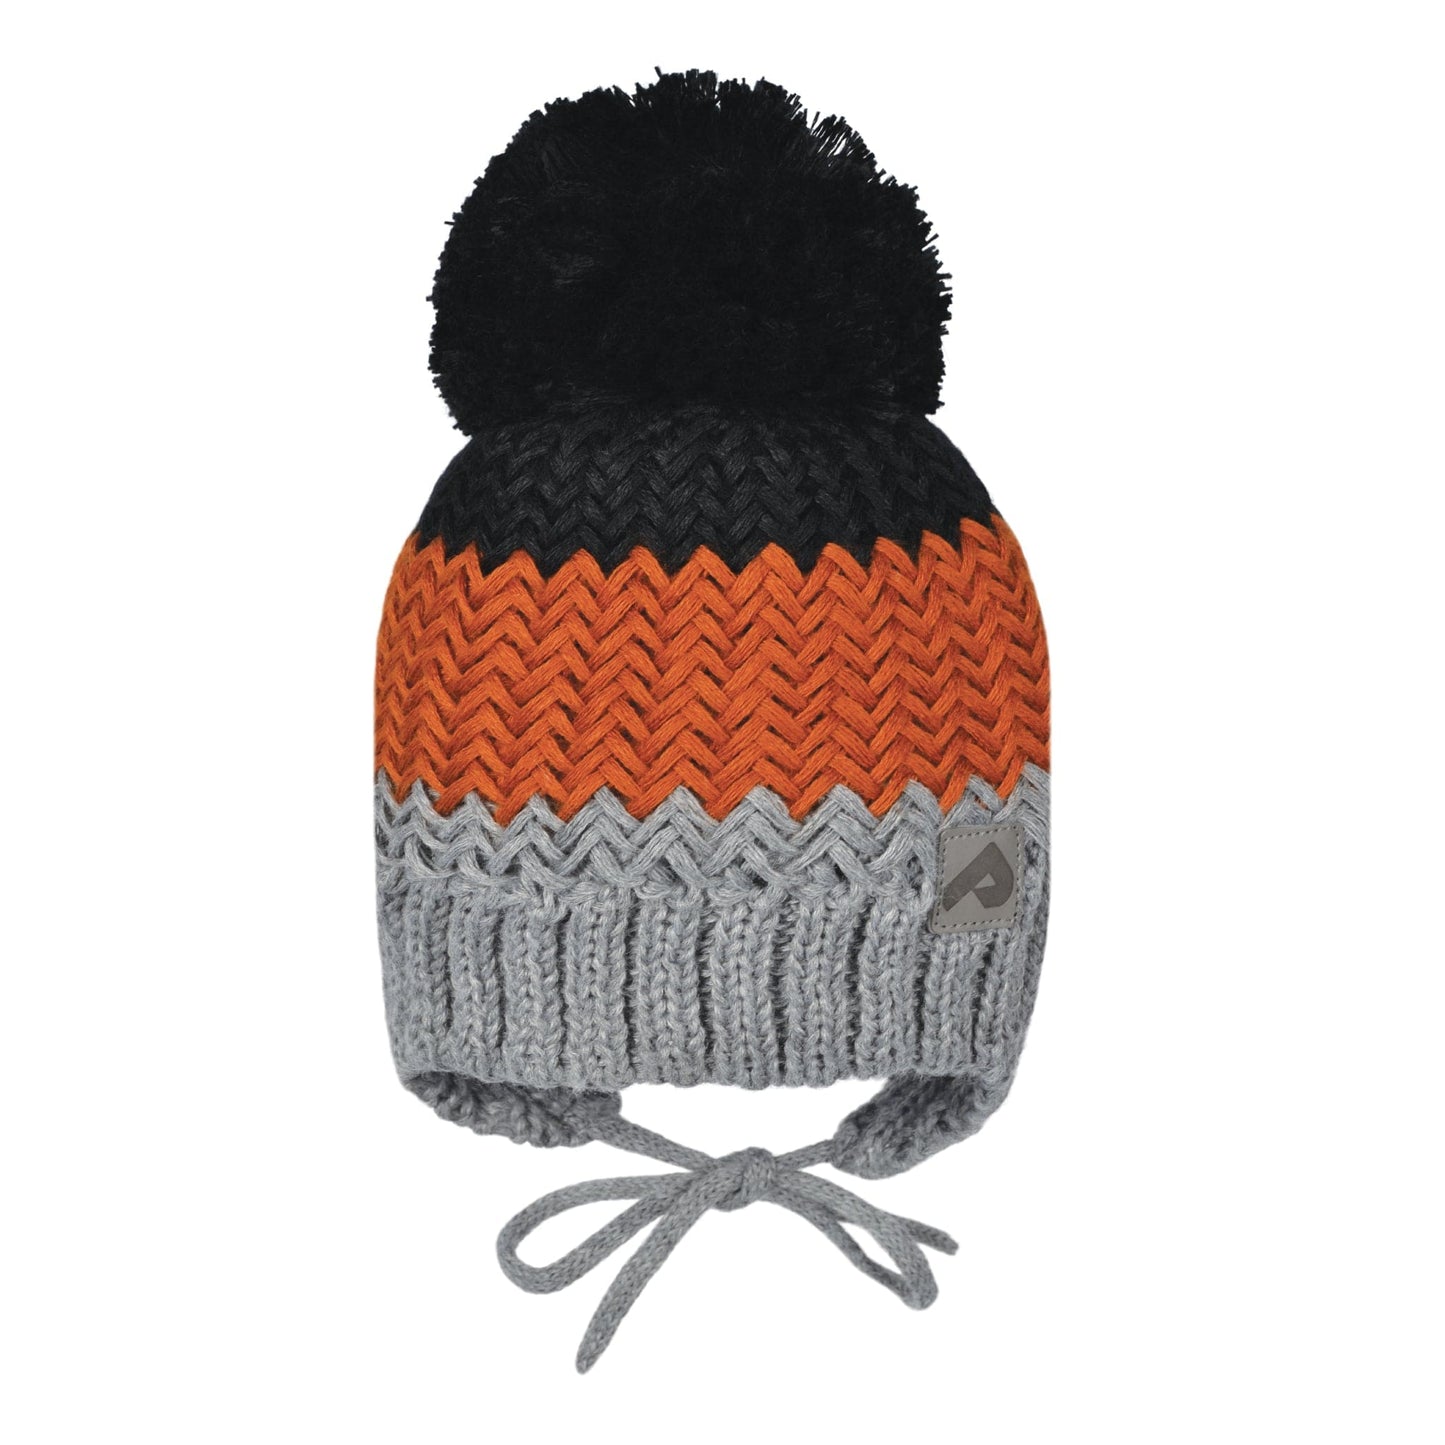 Acrylic hat with fleece lining and ears - Gray & Orange